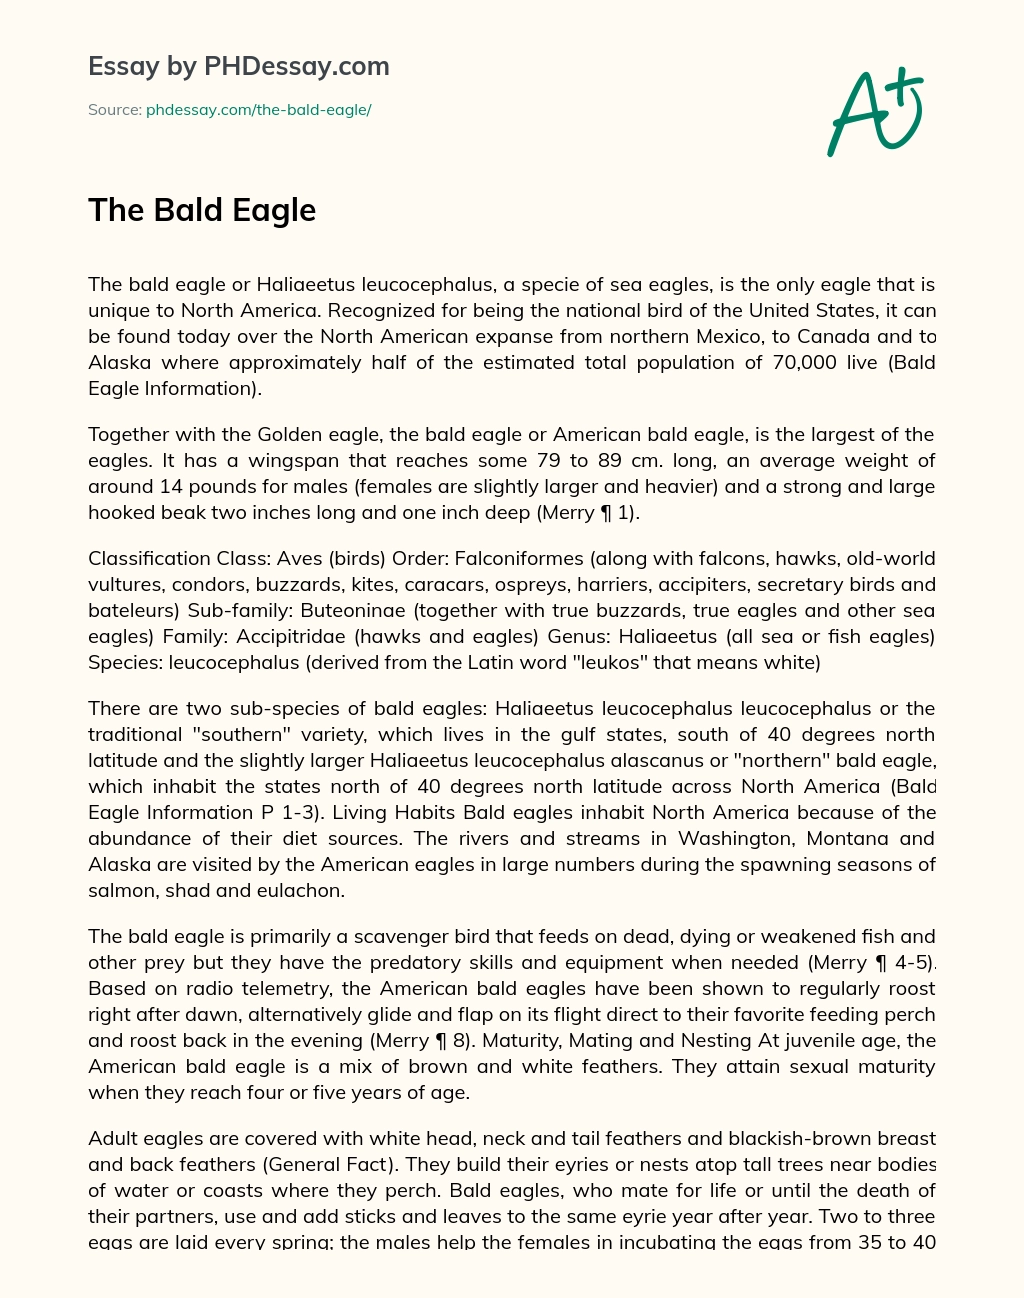 The Bald Eagle essay